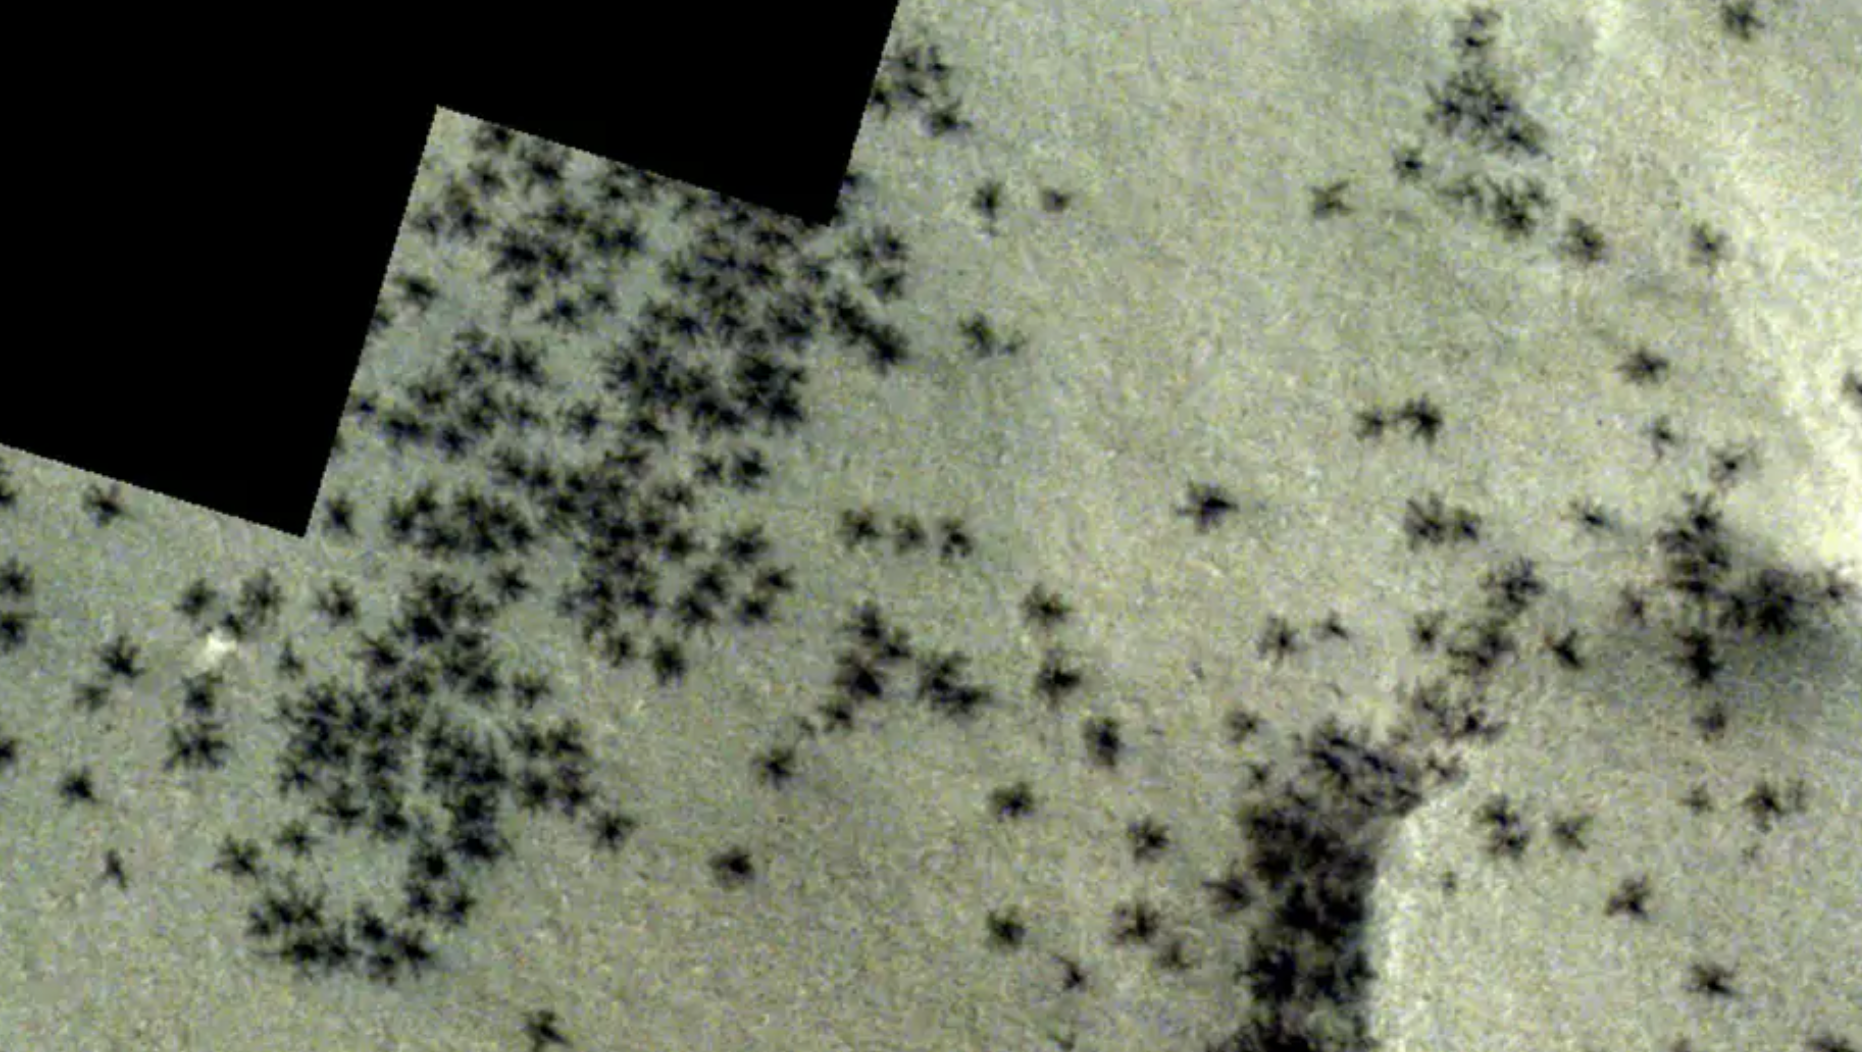 Orbitador de la ESA detecta “señales de arañas” en Marte